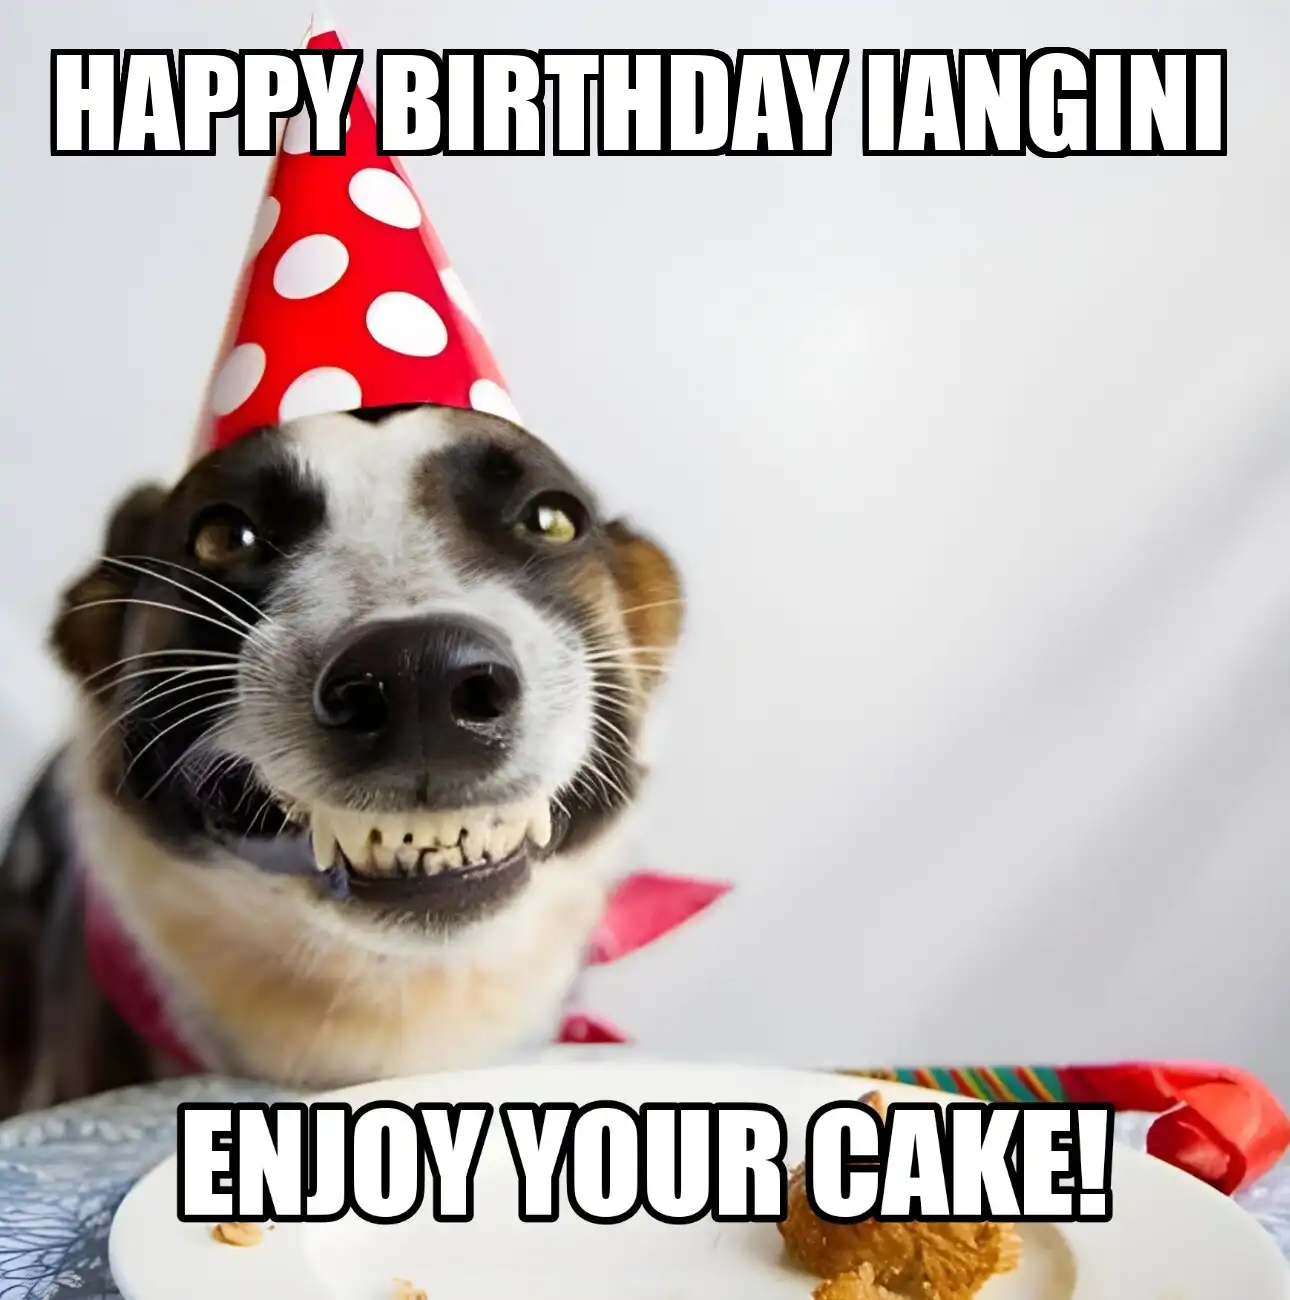 Happy Birthday Iangini Enjoy Your Cake Dog Meme